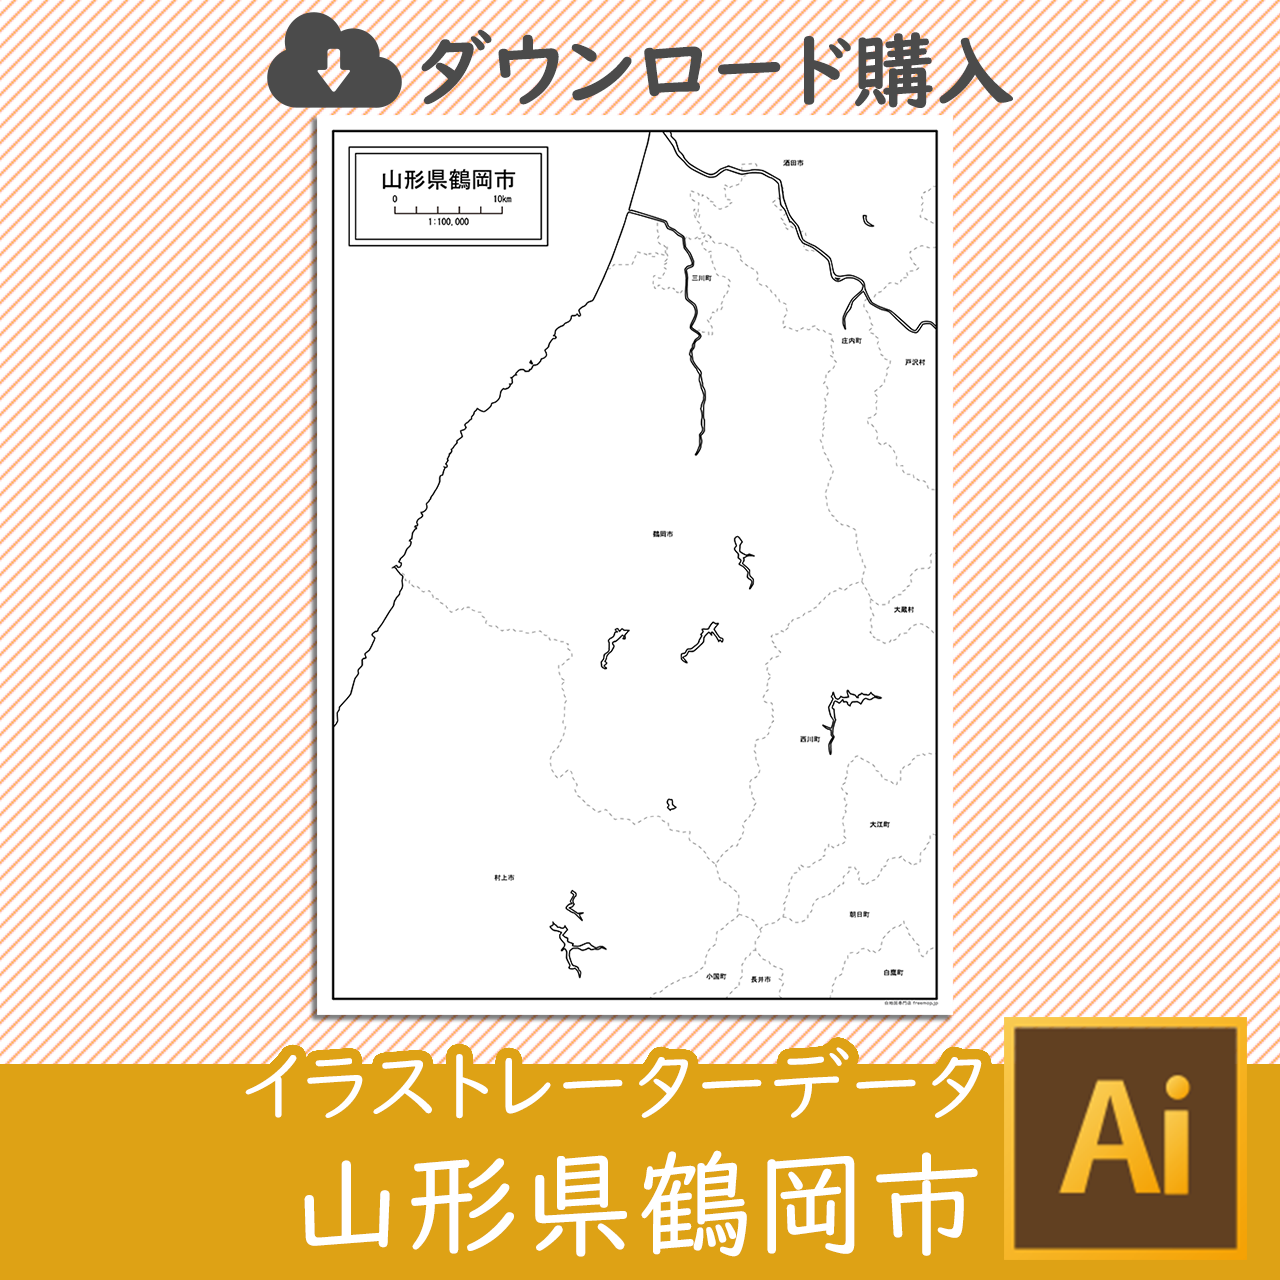 鶴岡市の白地図のサムネイル